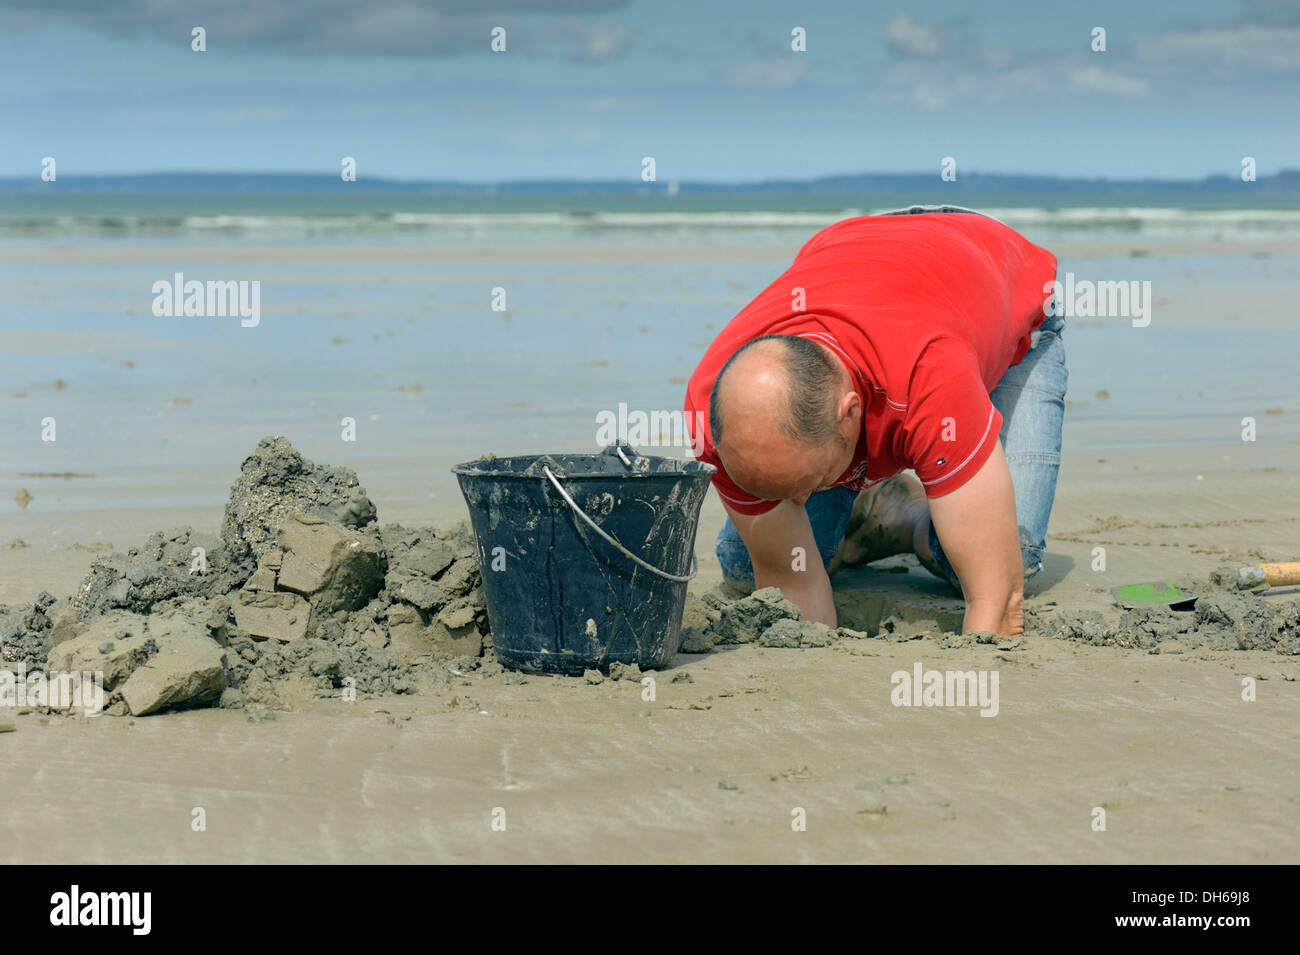 Mann Graben für sandworms (Arenicola marina) am Strand, Atlantik, finistere, Bretagne, Frankreich, Europa, publicground Stockfoto